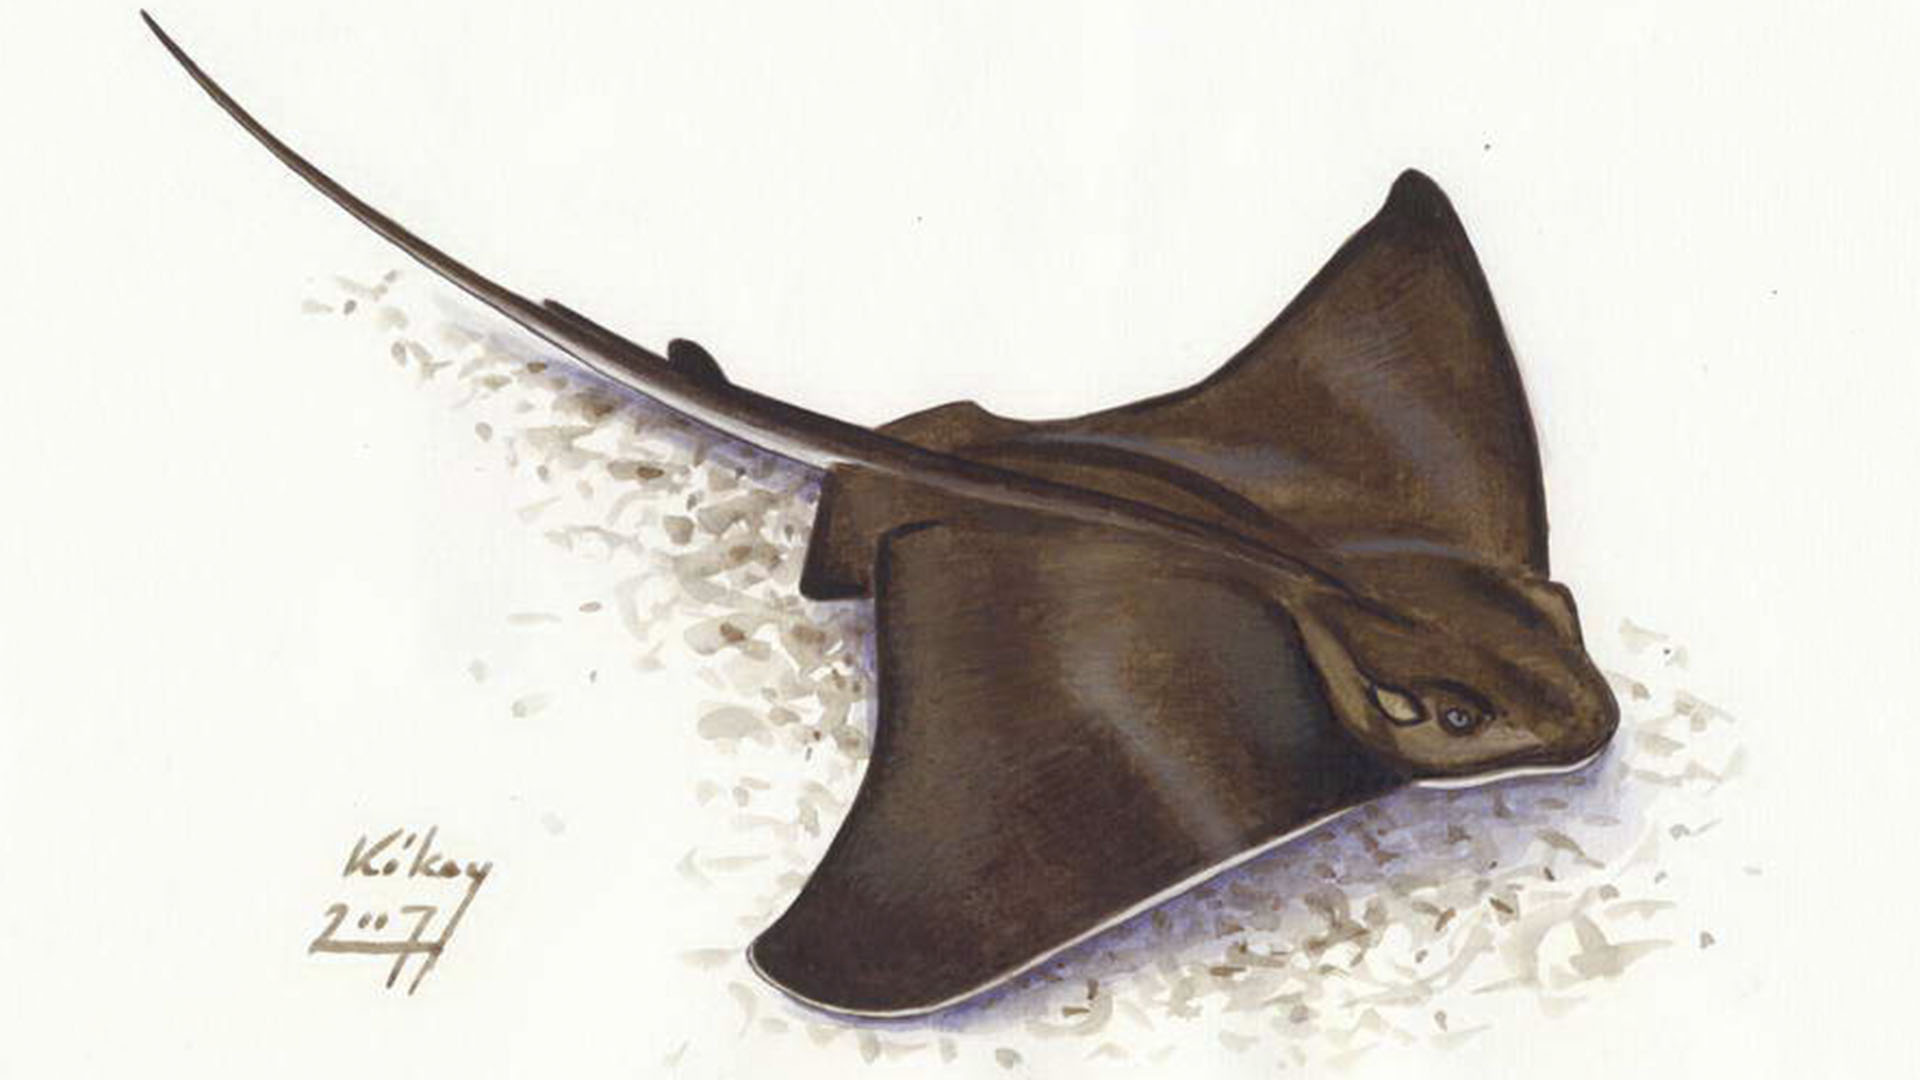 Meeresbewohner von Fuerteventura – Gewöhnliche Adlerrochen (Myliobatis aquila).